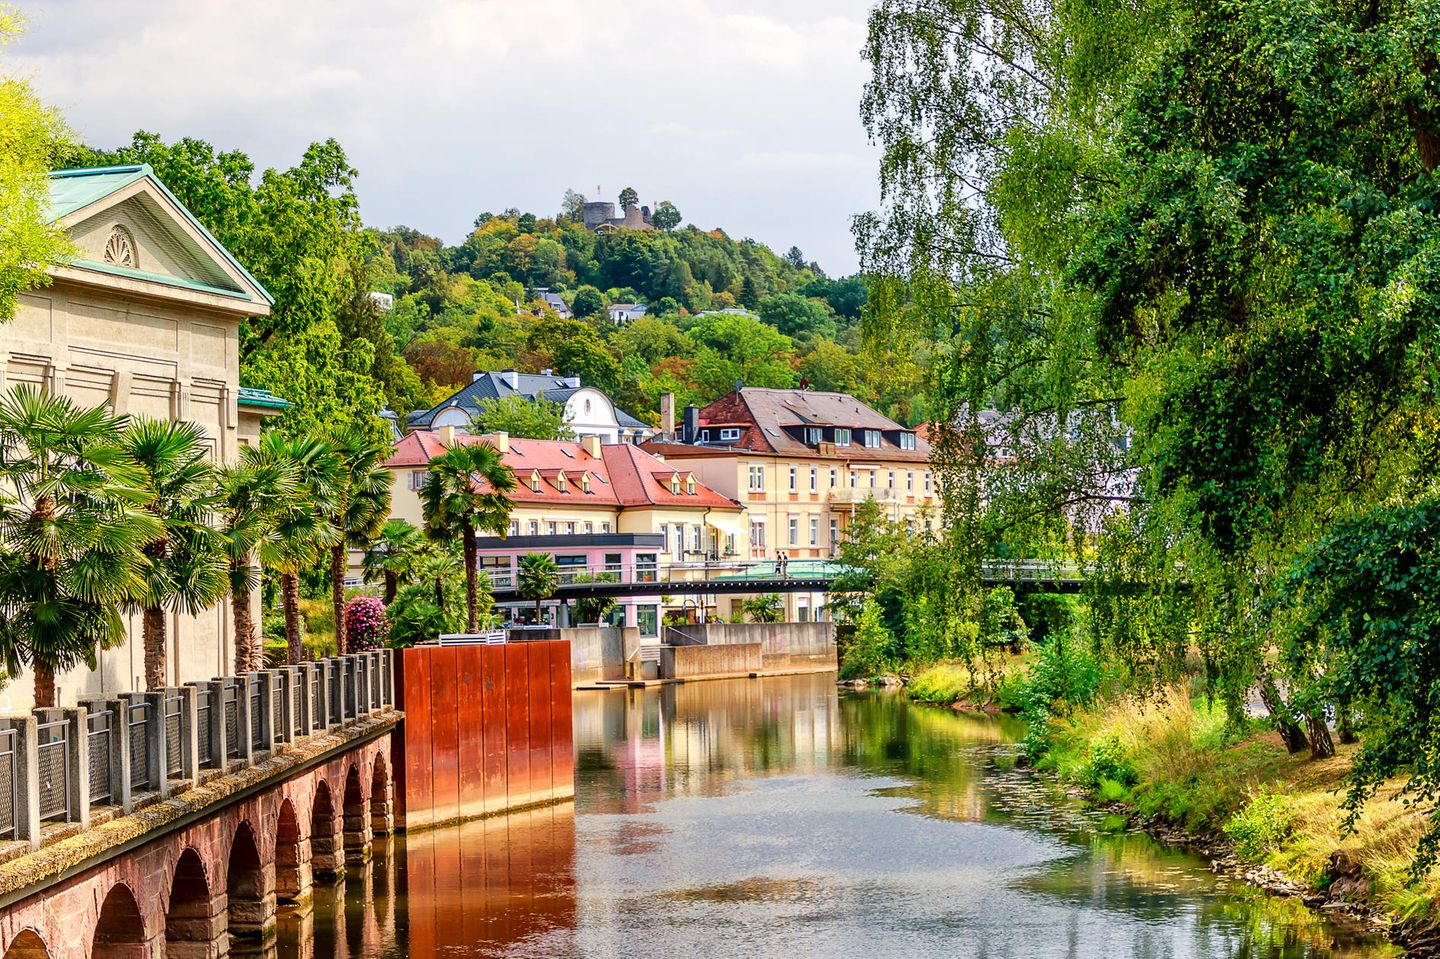 Ufer der Saale in Bad Kissingen